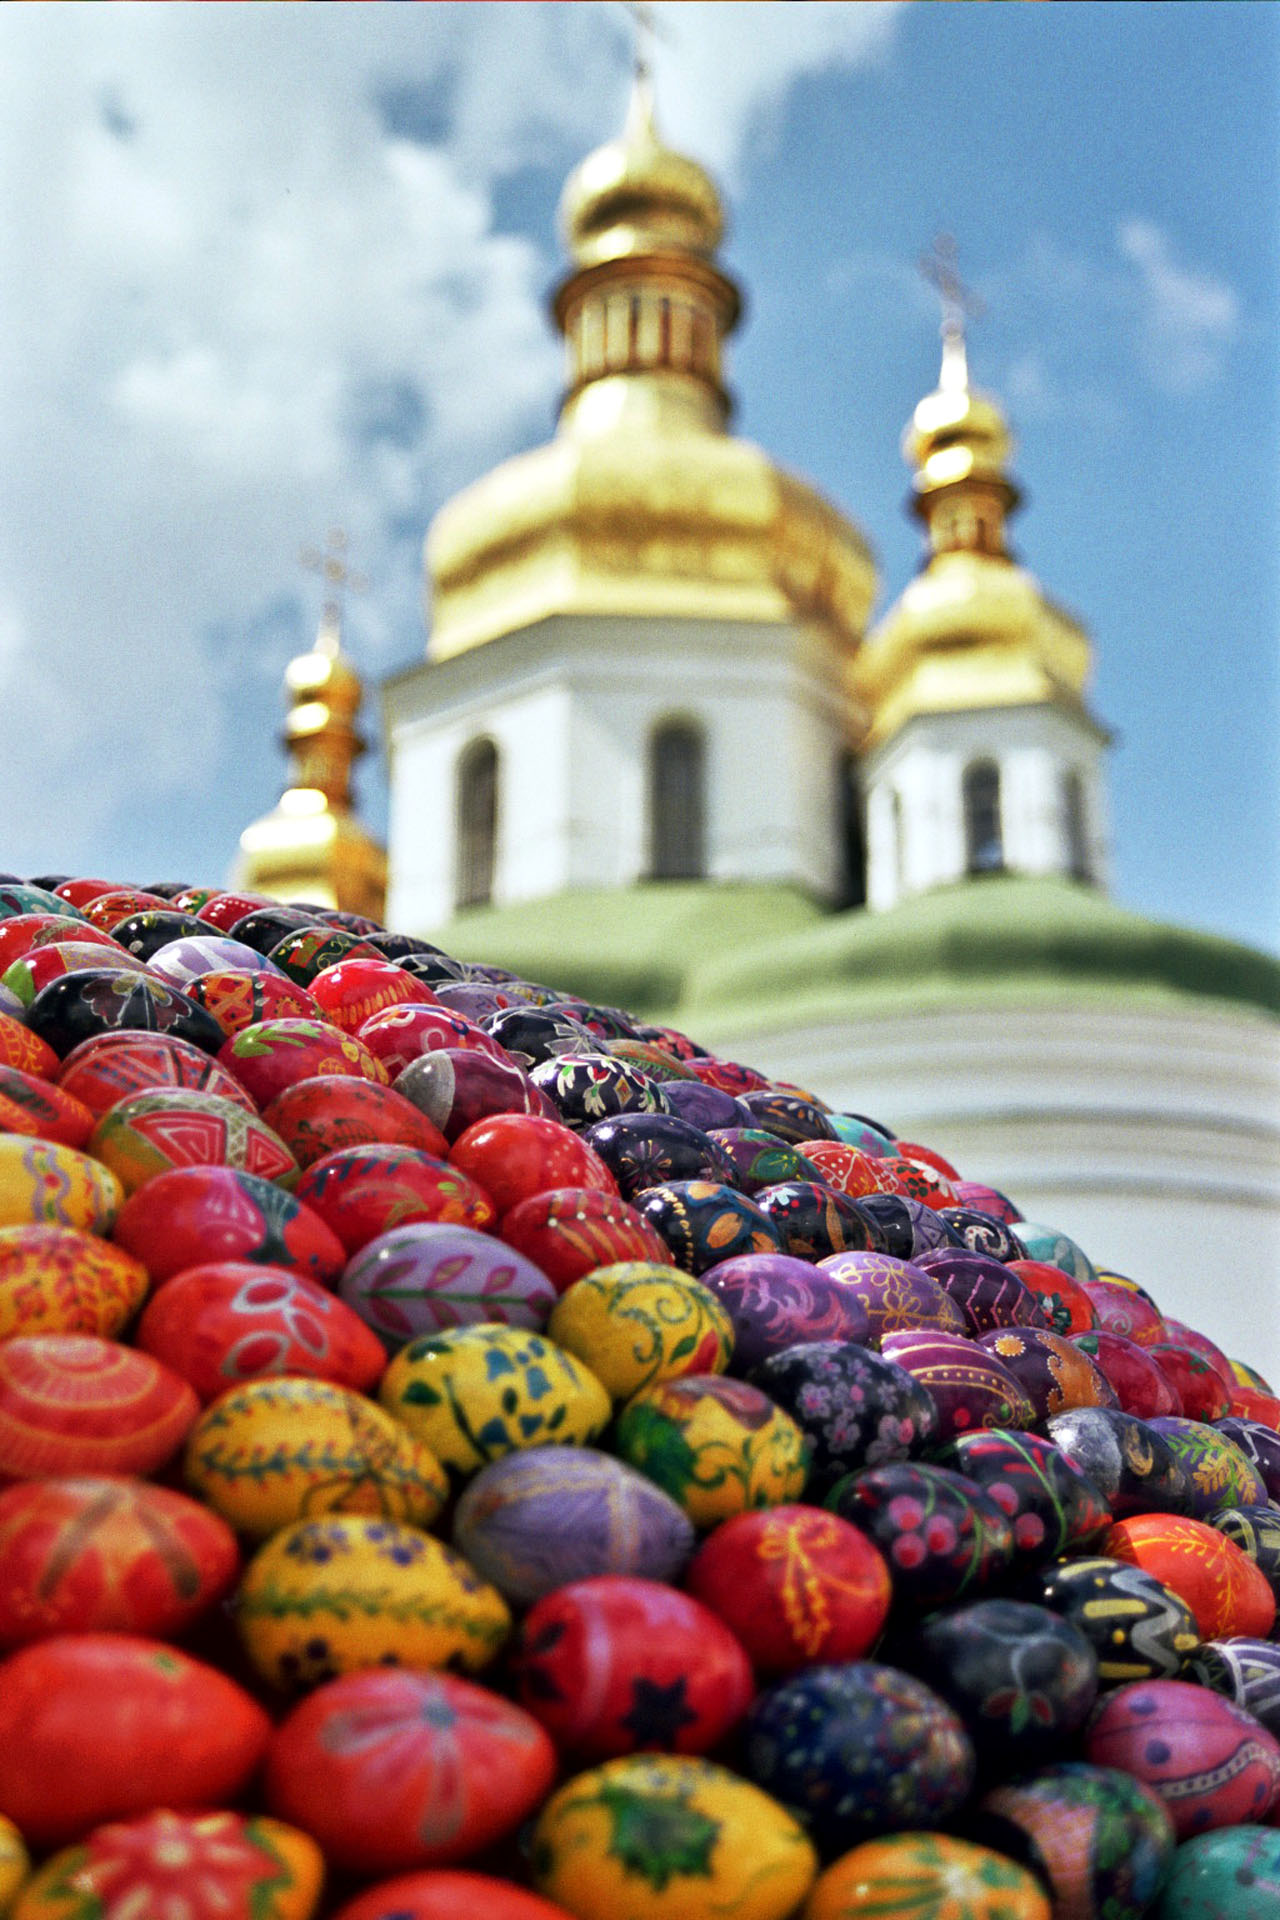 May 2010 - Ukraine